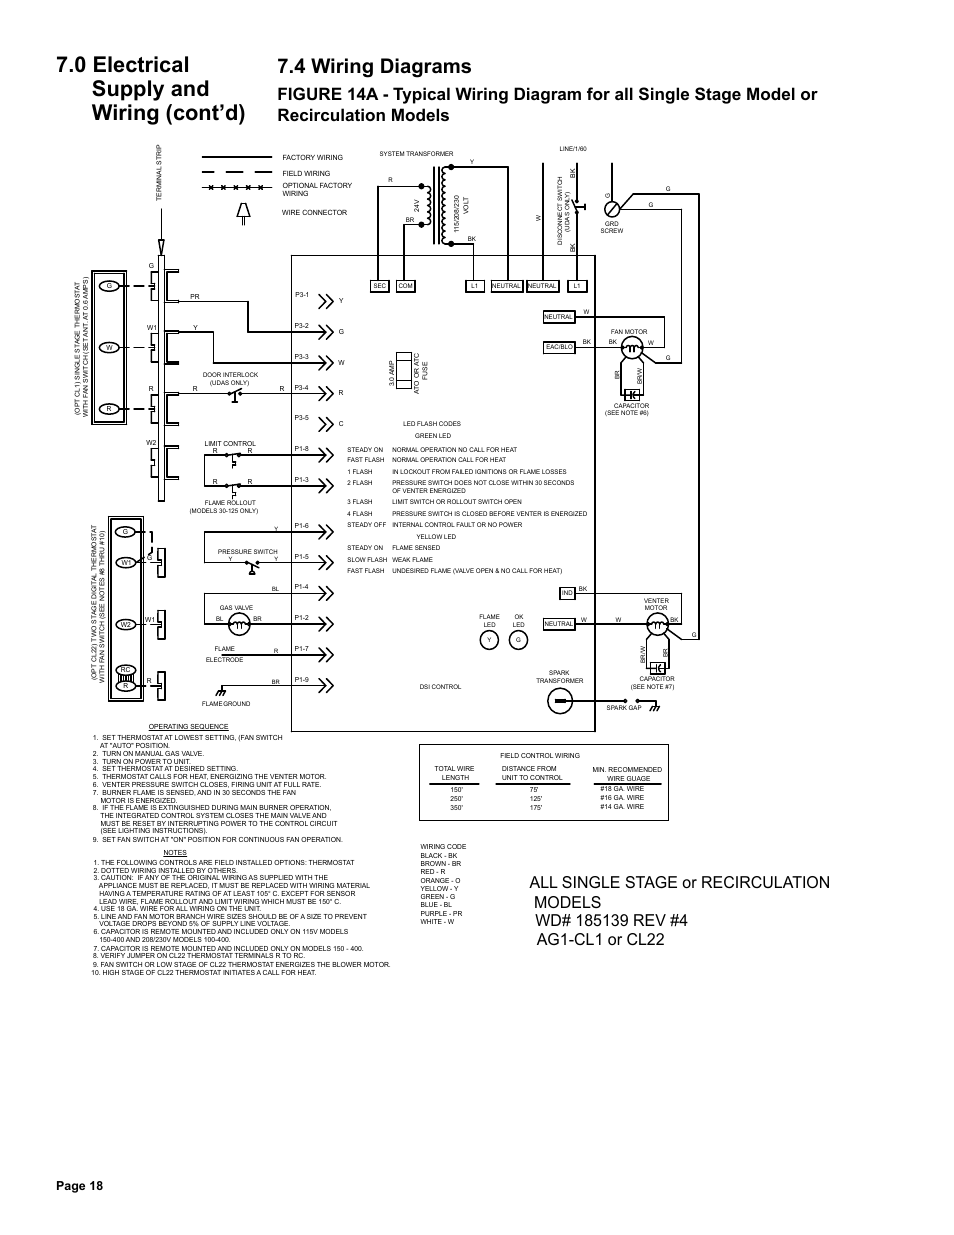 reznor waste oil heater wiring diagram